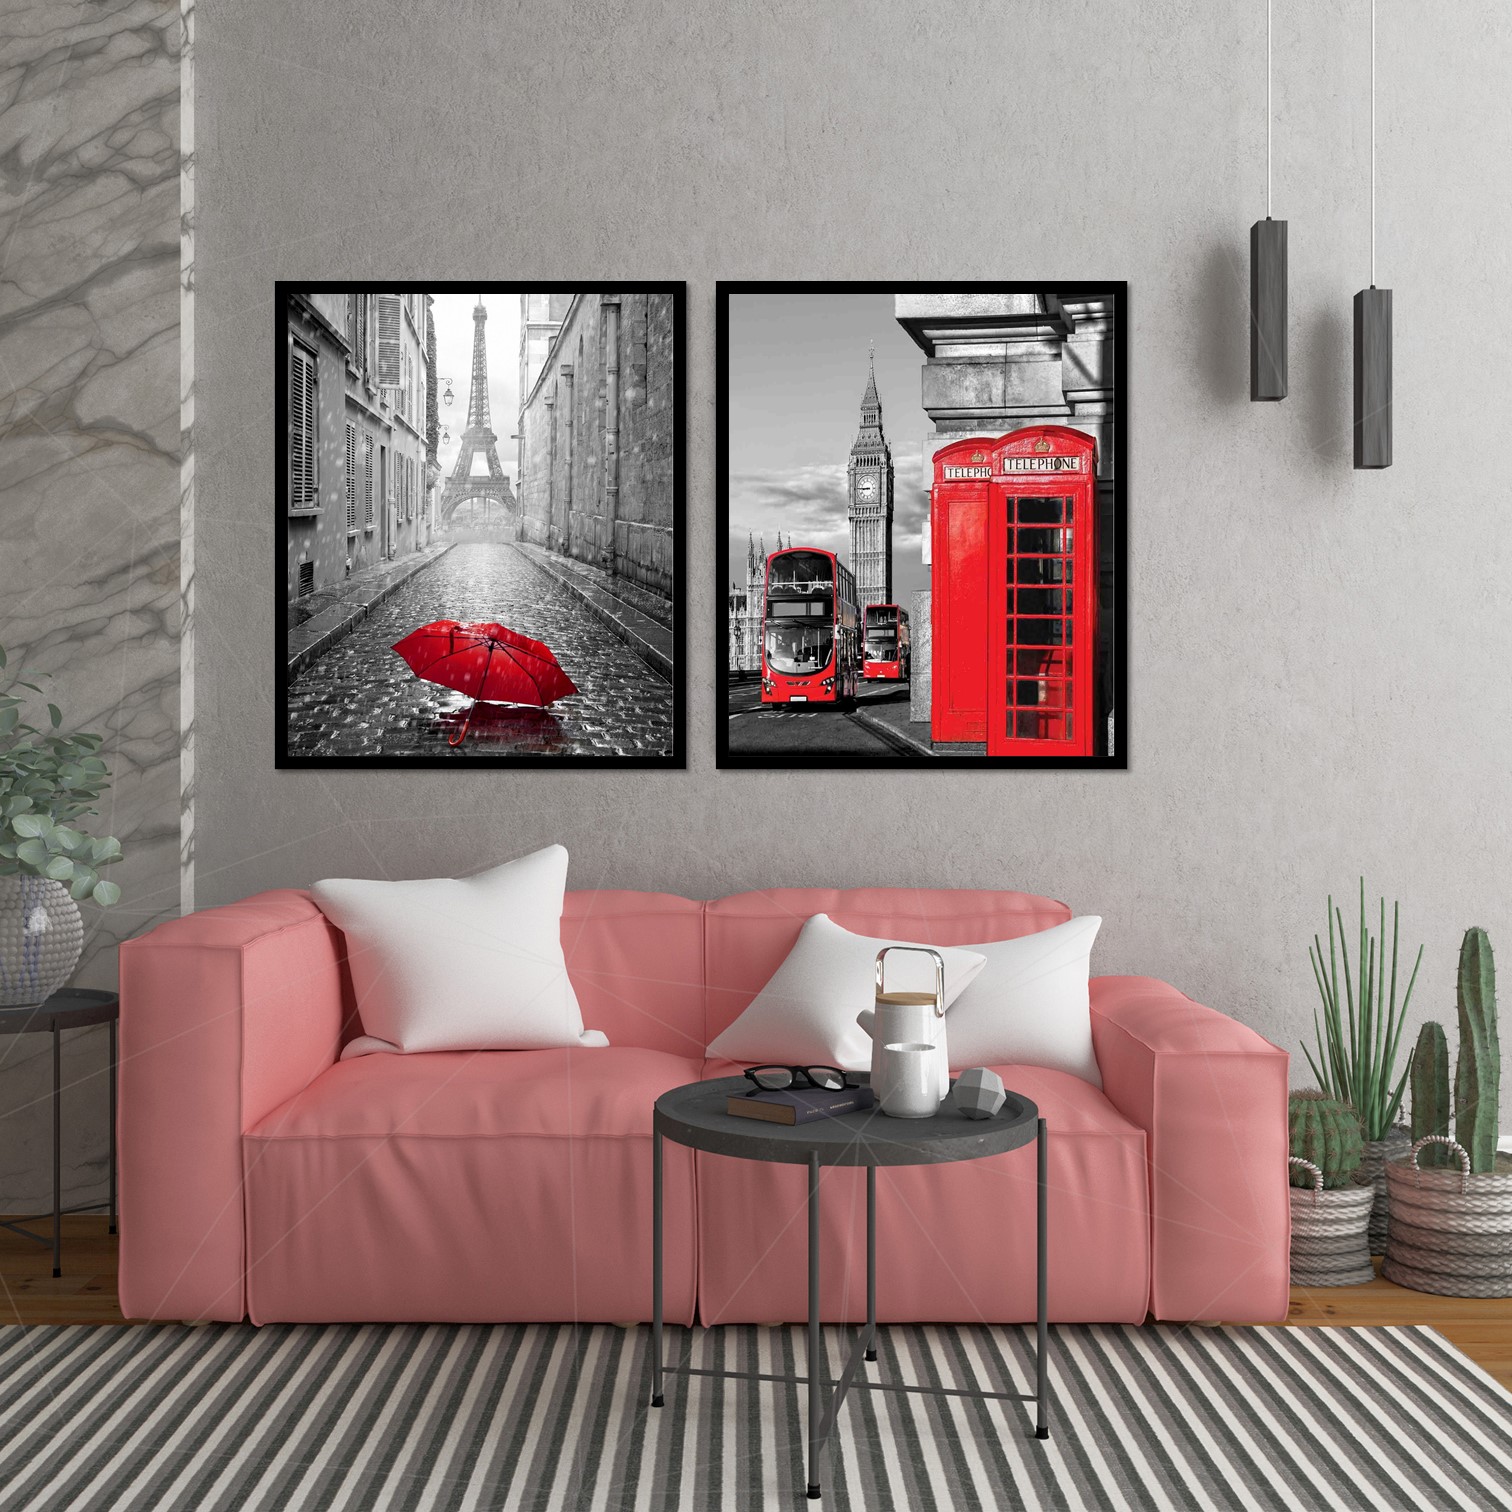 Personalizado Didart Handmade 2 Cuadros decoración salón o dormitorio moderno Con marco Díptico,Cabina Roja· Elige tamaño y color del marco.Hecho en España 